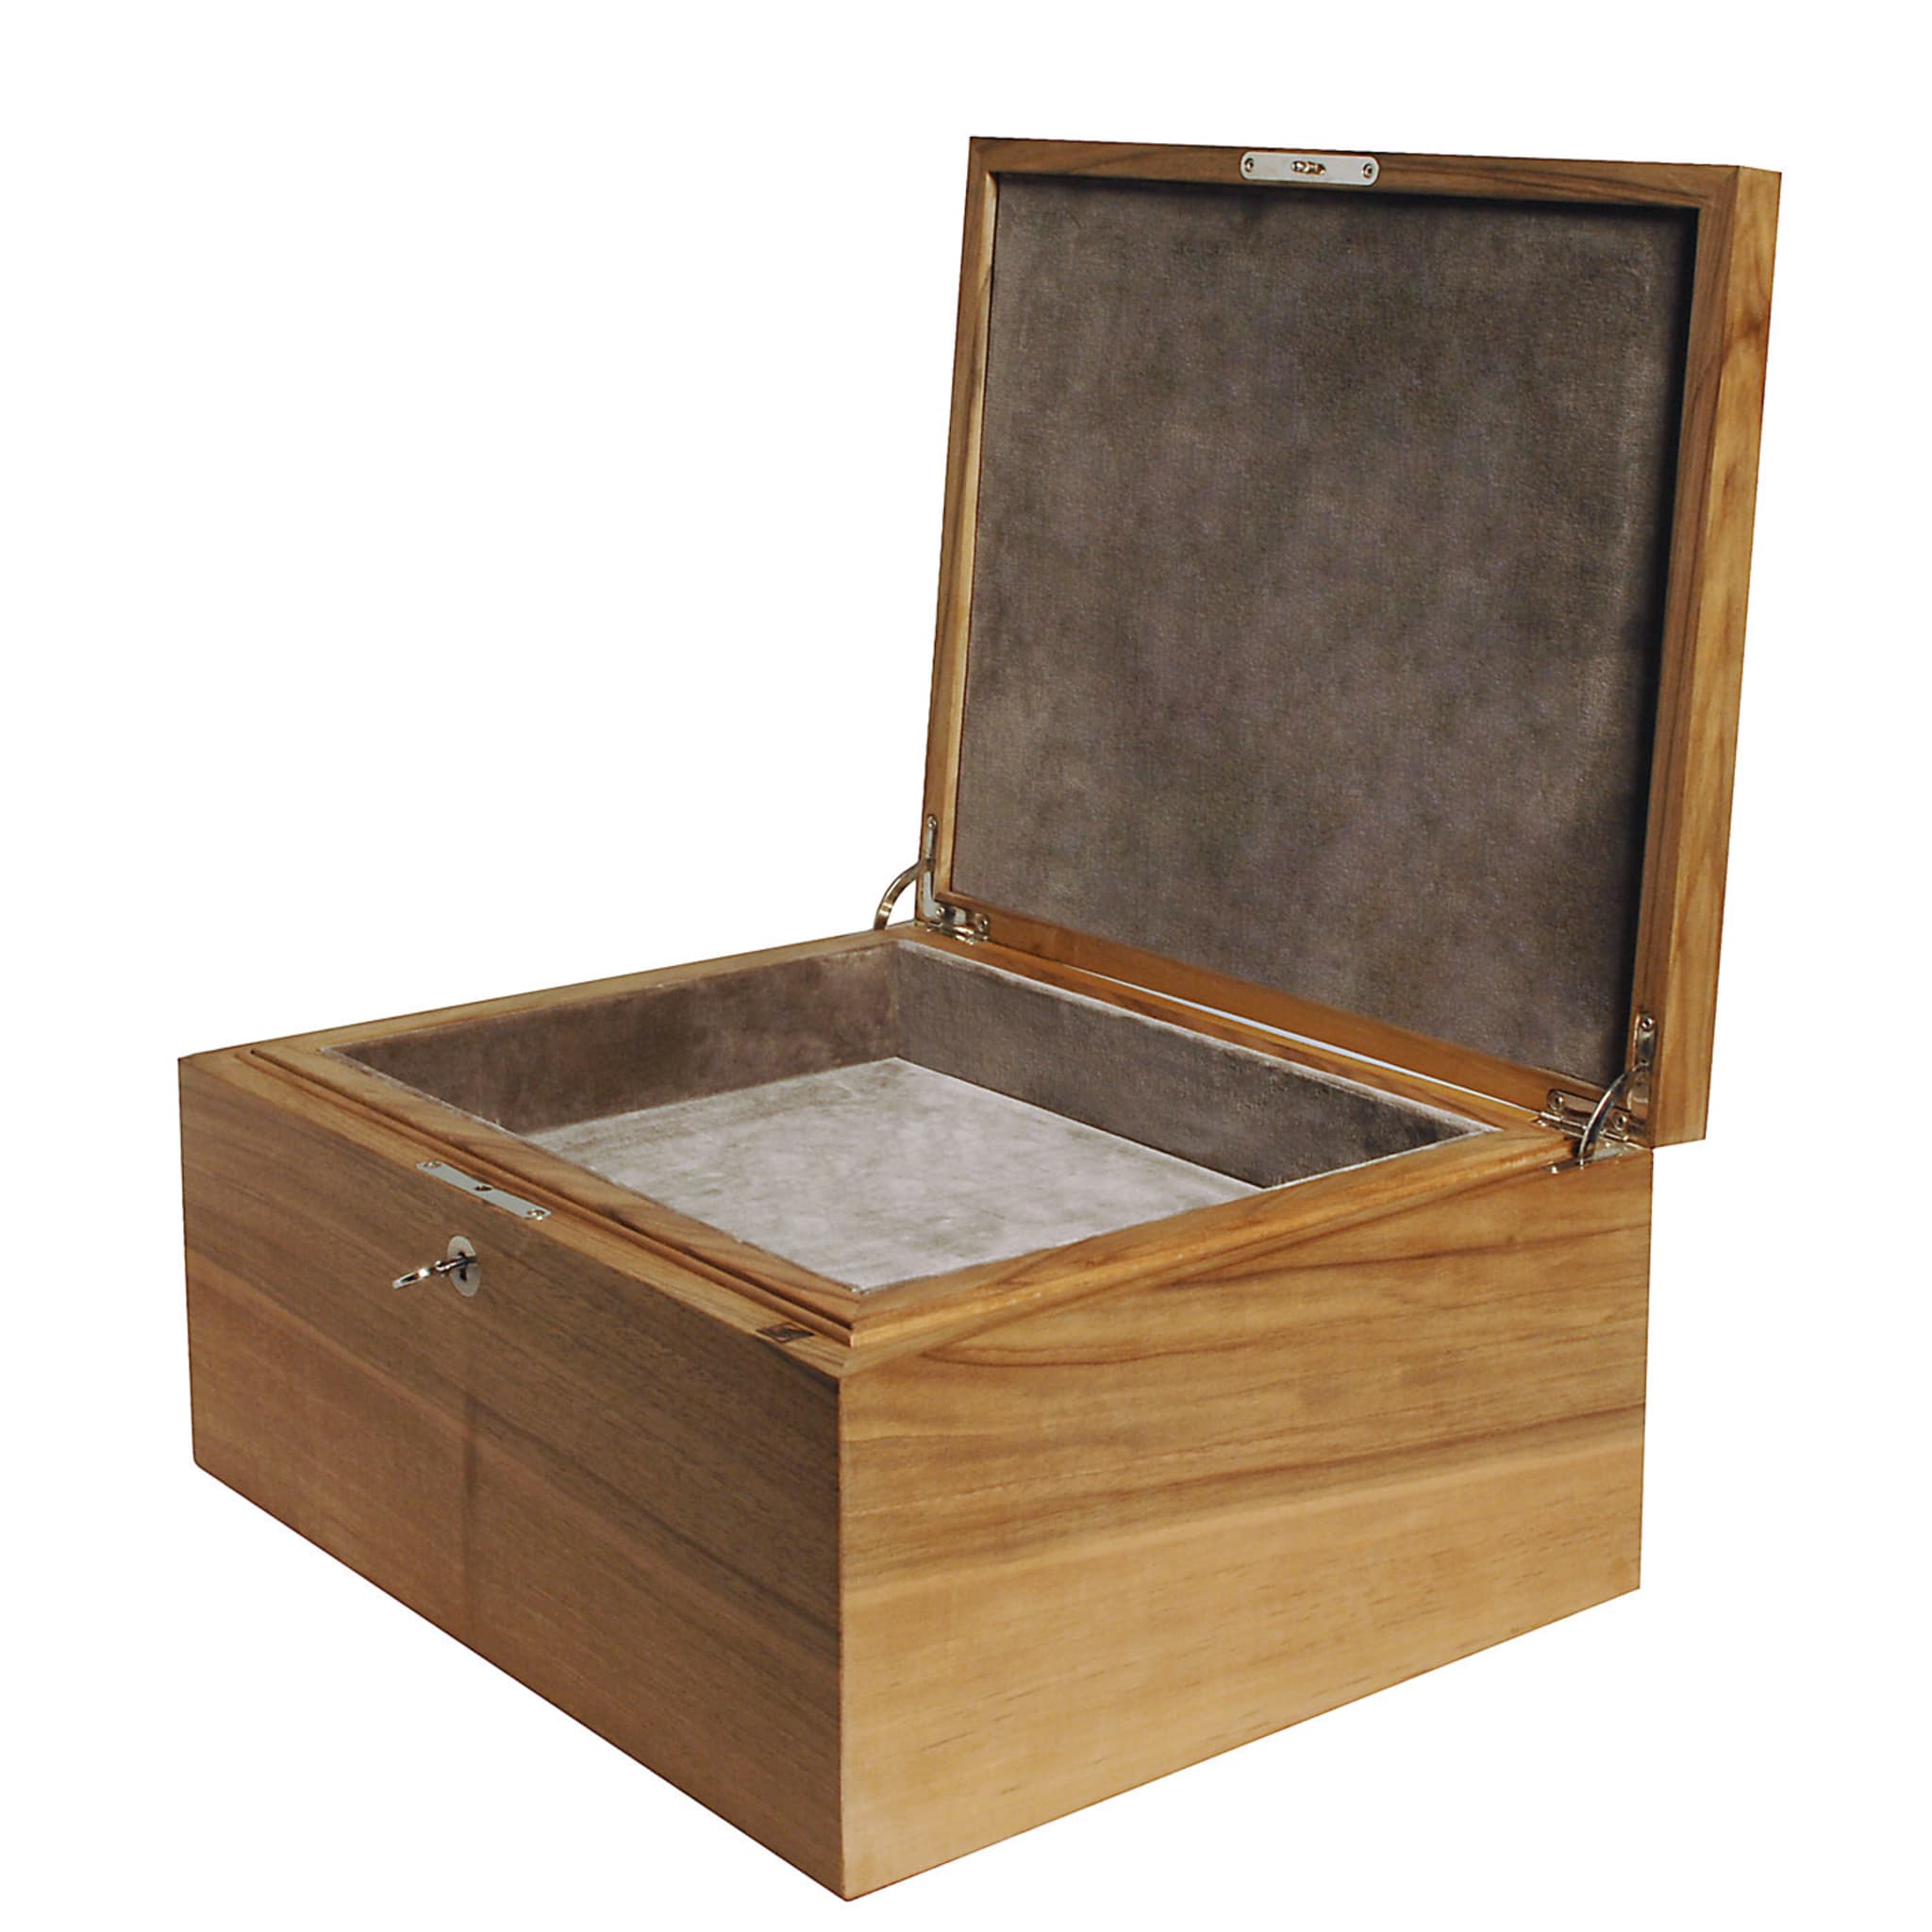 Box in Walnut Wood - Alternative view 2